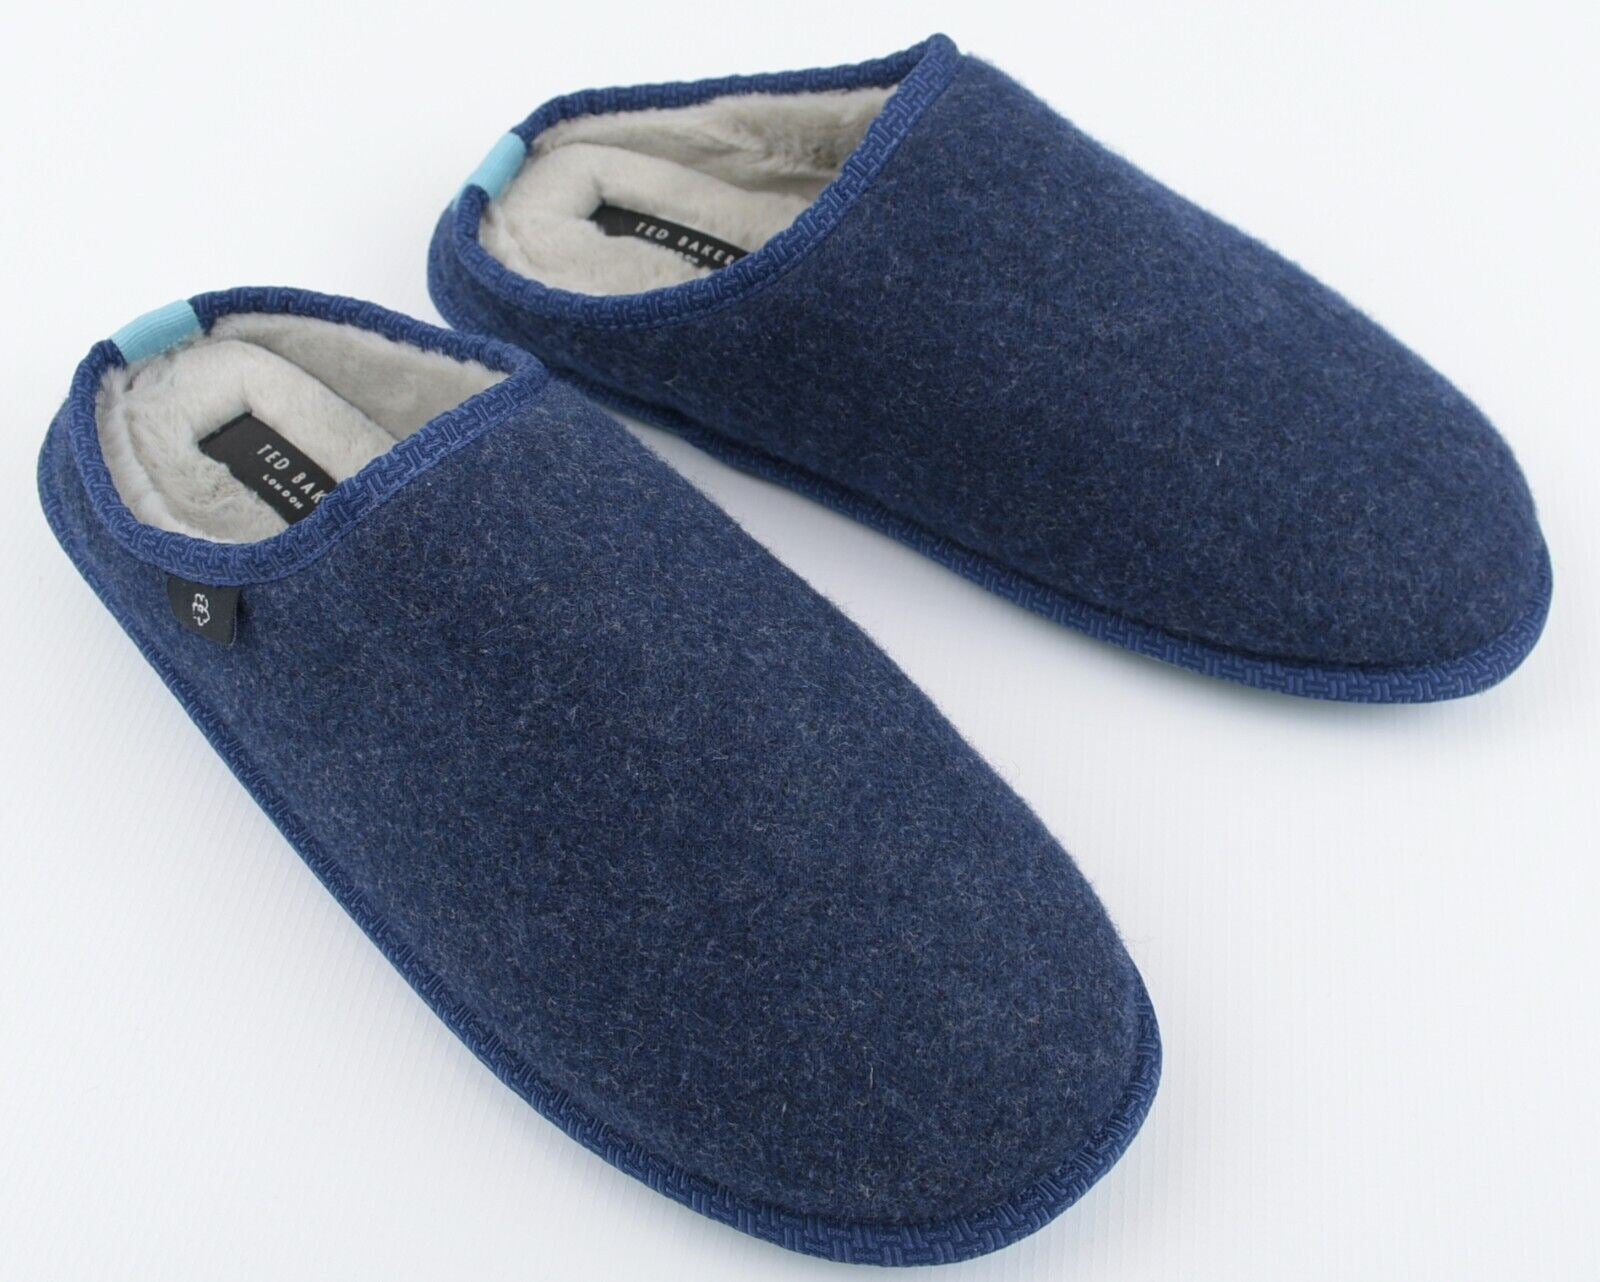 TED BAKER Men's SIMONN Felt Mulet Sole Slippers, Blue, size UK 10 /EU 44